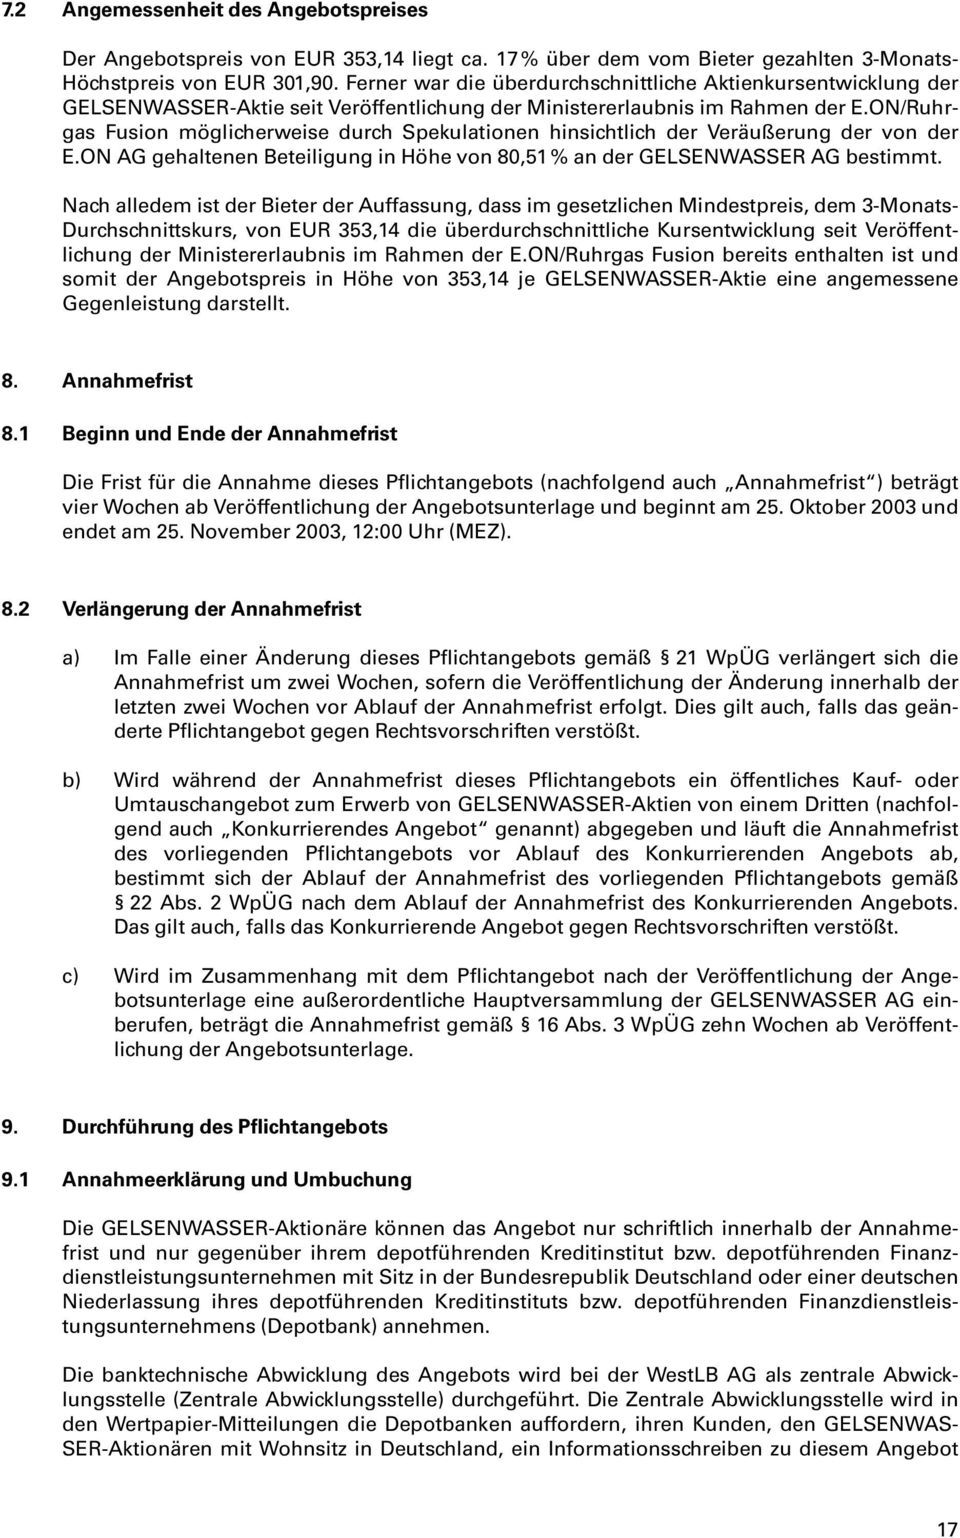 ON/Ruhrgas Fusion möglicherweise durch Spekulationen hinsichtlich der Veräußerung der von der E.ON AG gehaltenen Beteiligung in Höhe von 80,51 % an der GELSENWASSER AG bestimmt.